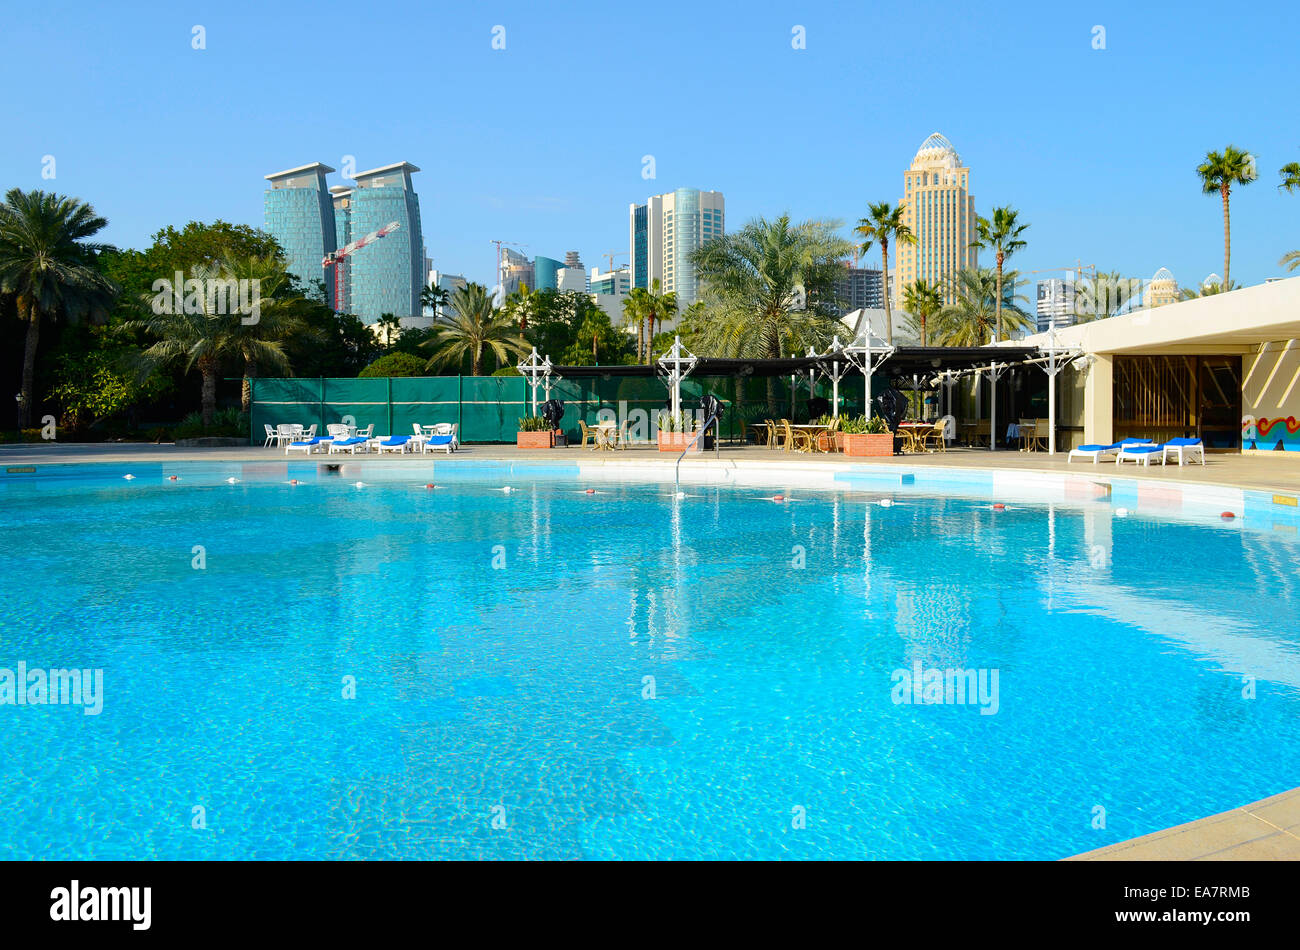 Luxus Hotelschwimmbad mitten im kommerziellen Zentrum von Doha, der Hauptstadt des Arabischen Golfs Land Katar. Stockfoto